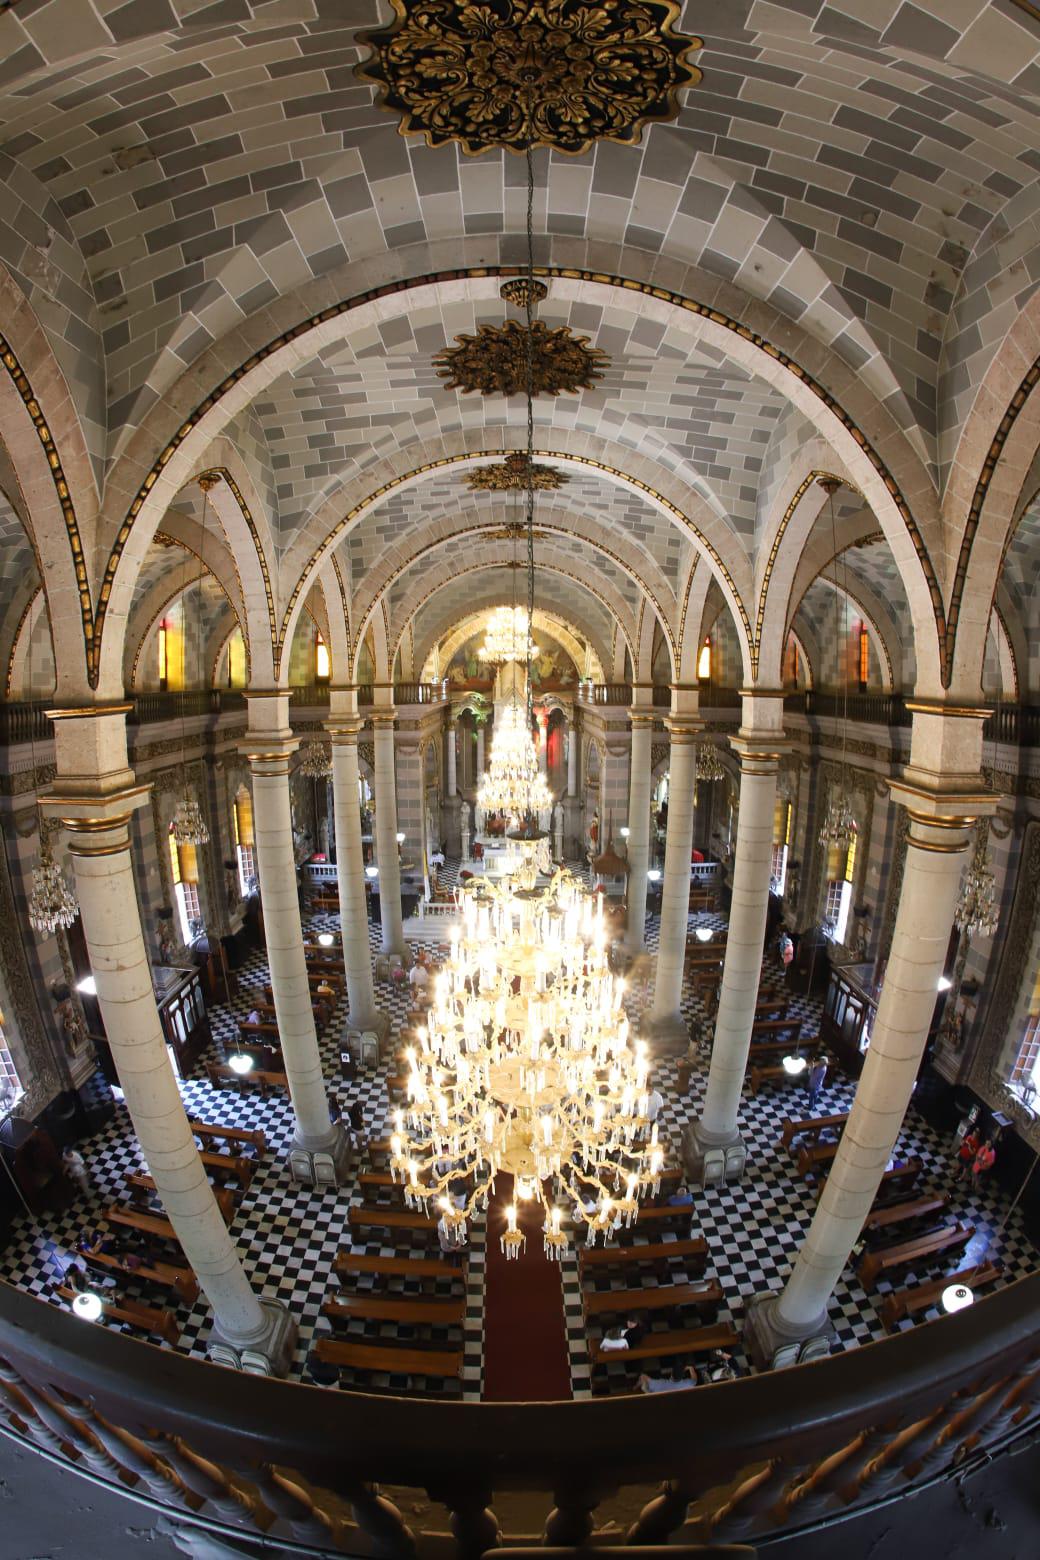 $!La Catedral de Mazatlán, una joya arquitectónica del puerto